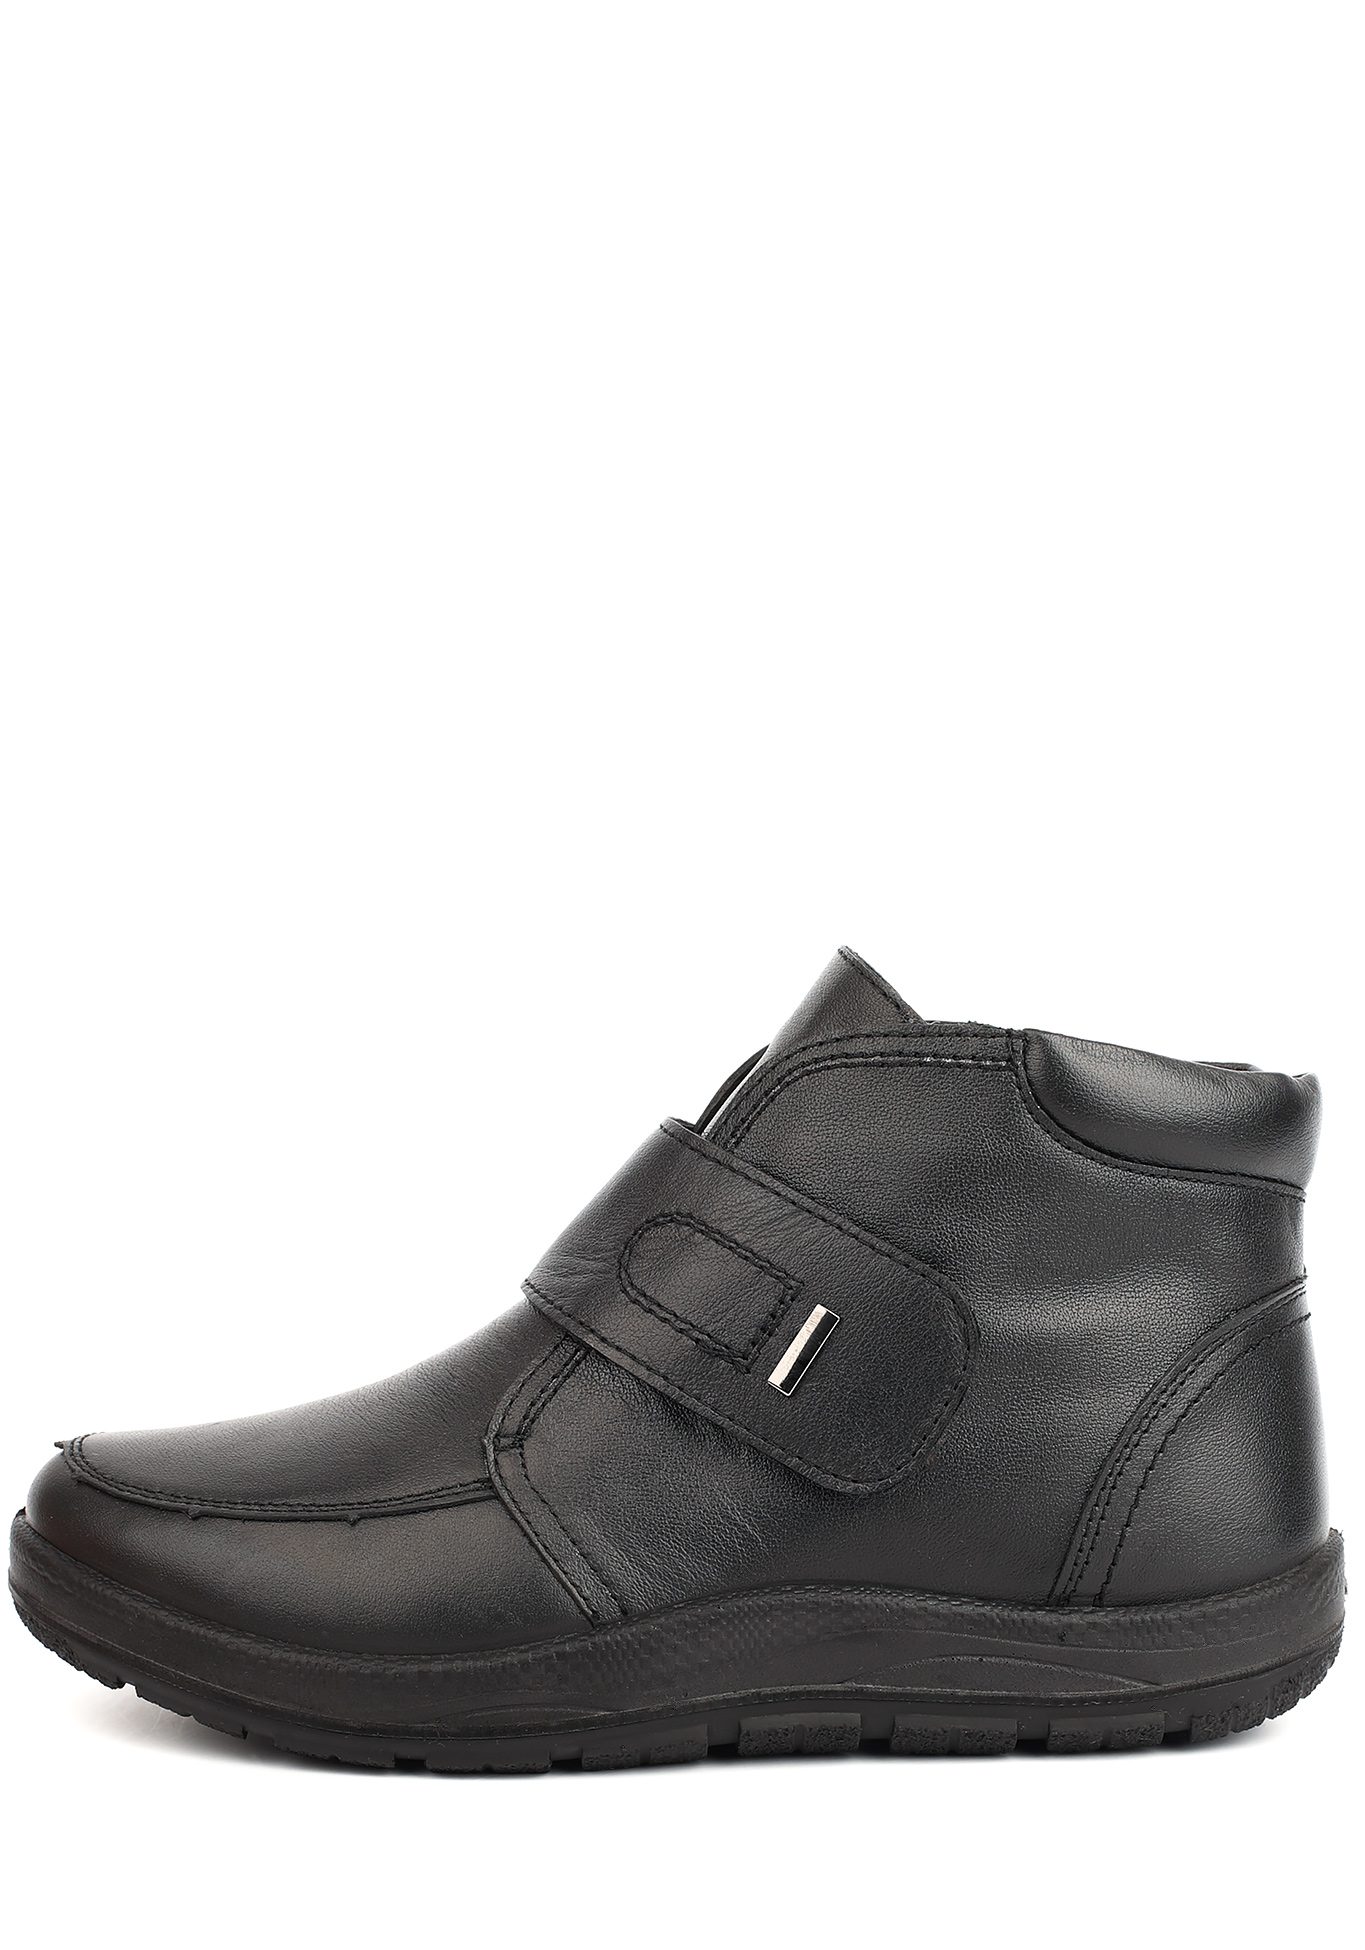 Ботинки женские "Лучия" Germanika, размер 37, цвет черный - фото 3